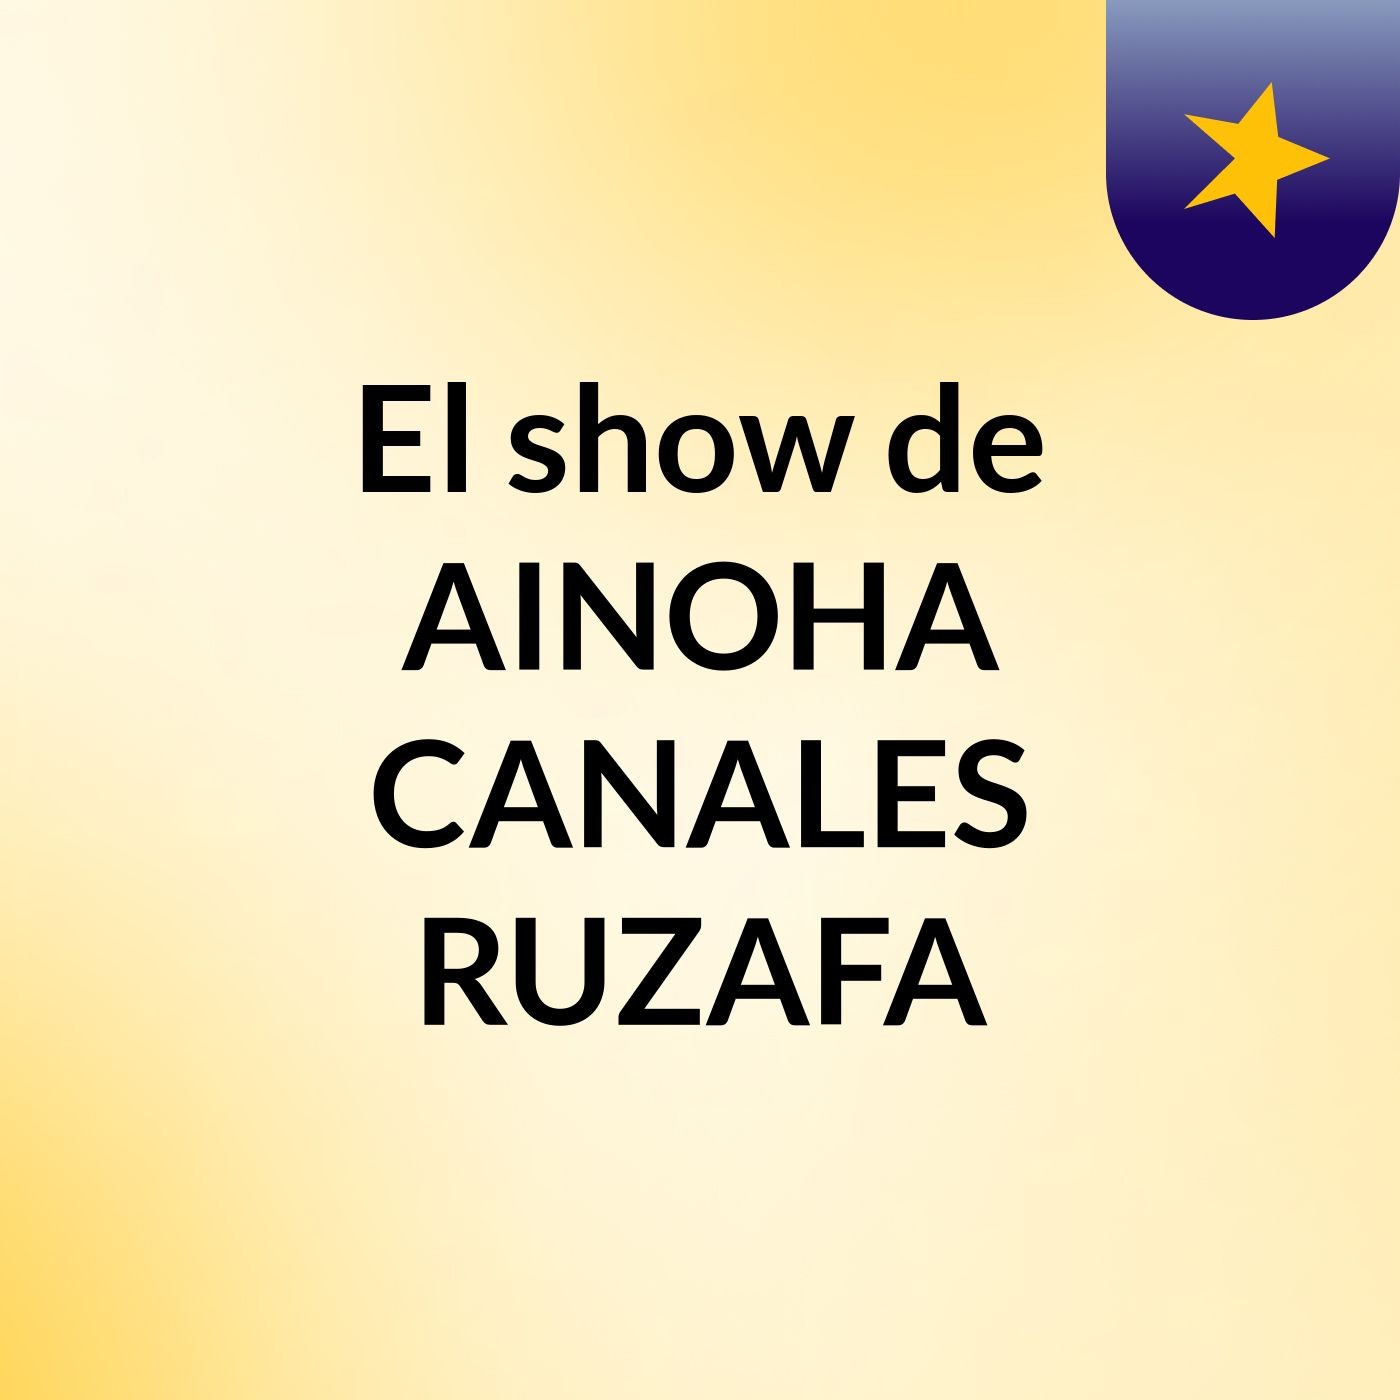 El show de AINOHA CANALES RUZAFA